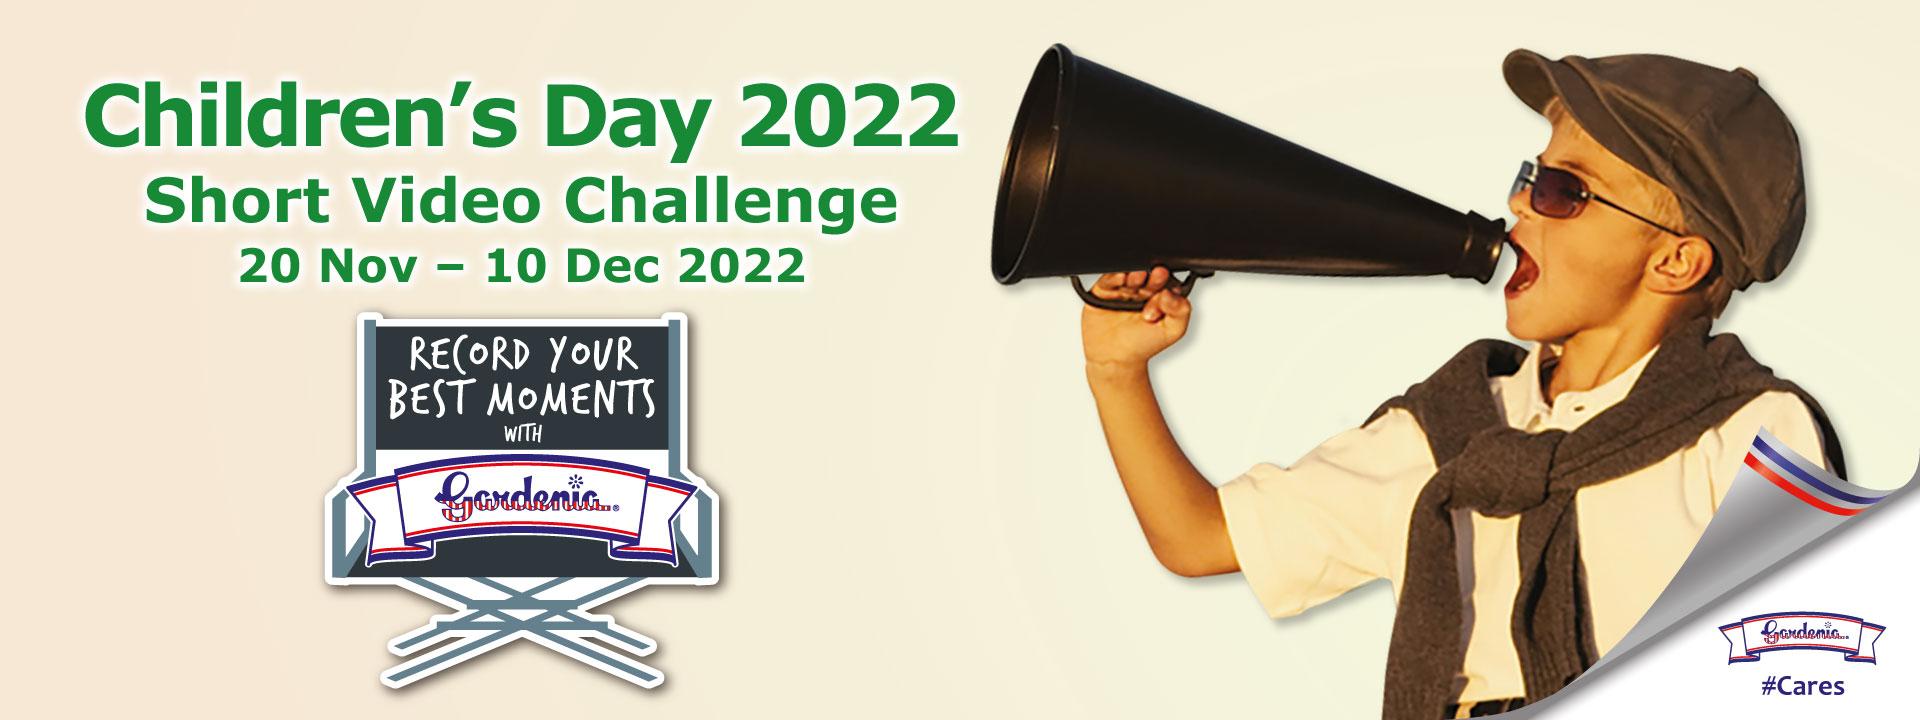 Gardenia Children's Day Short Video Challenge 2022